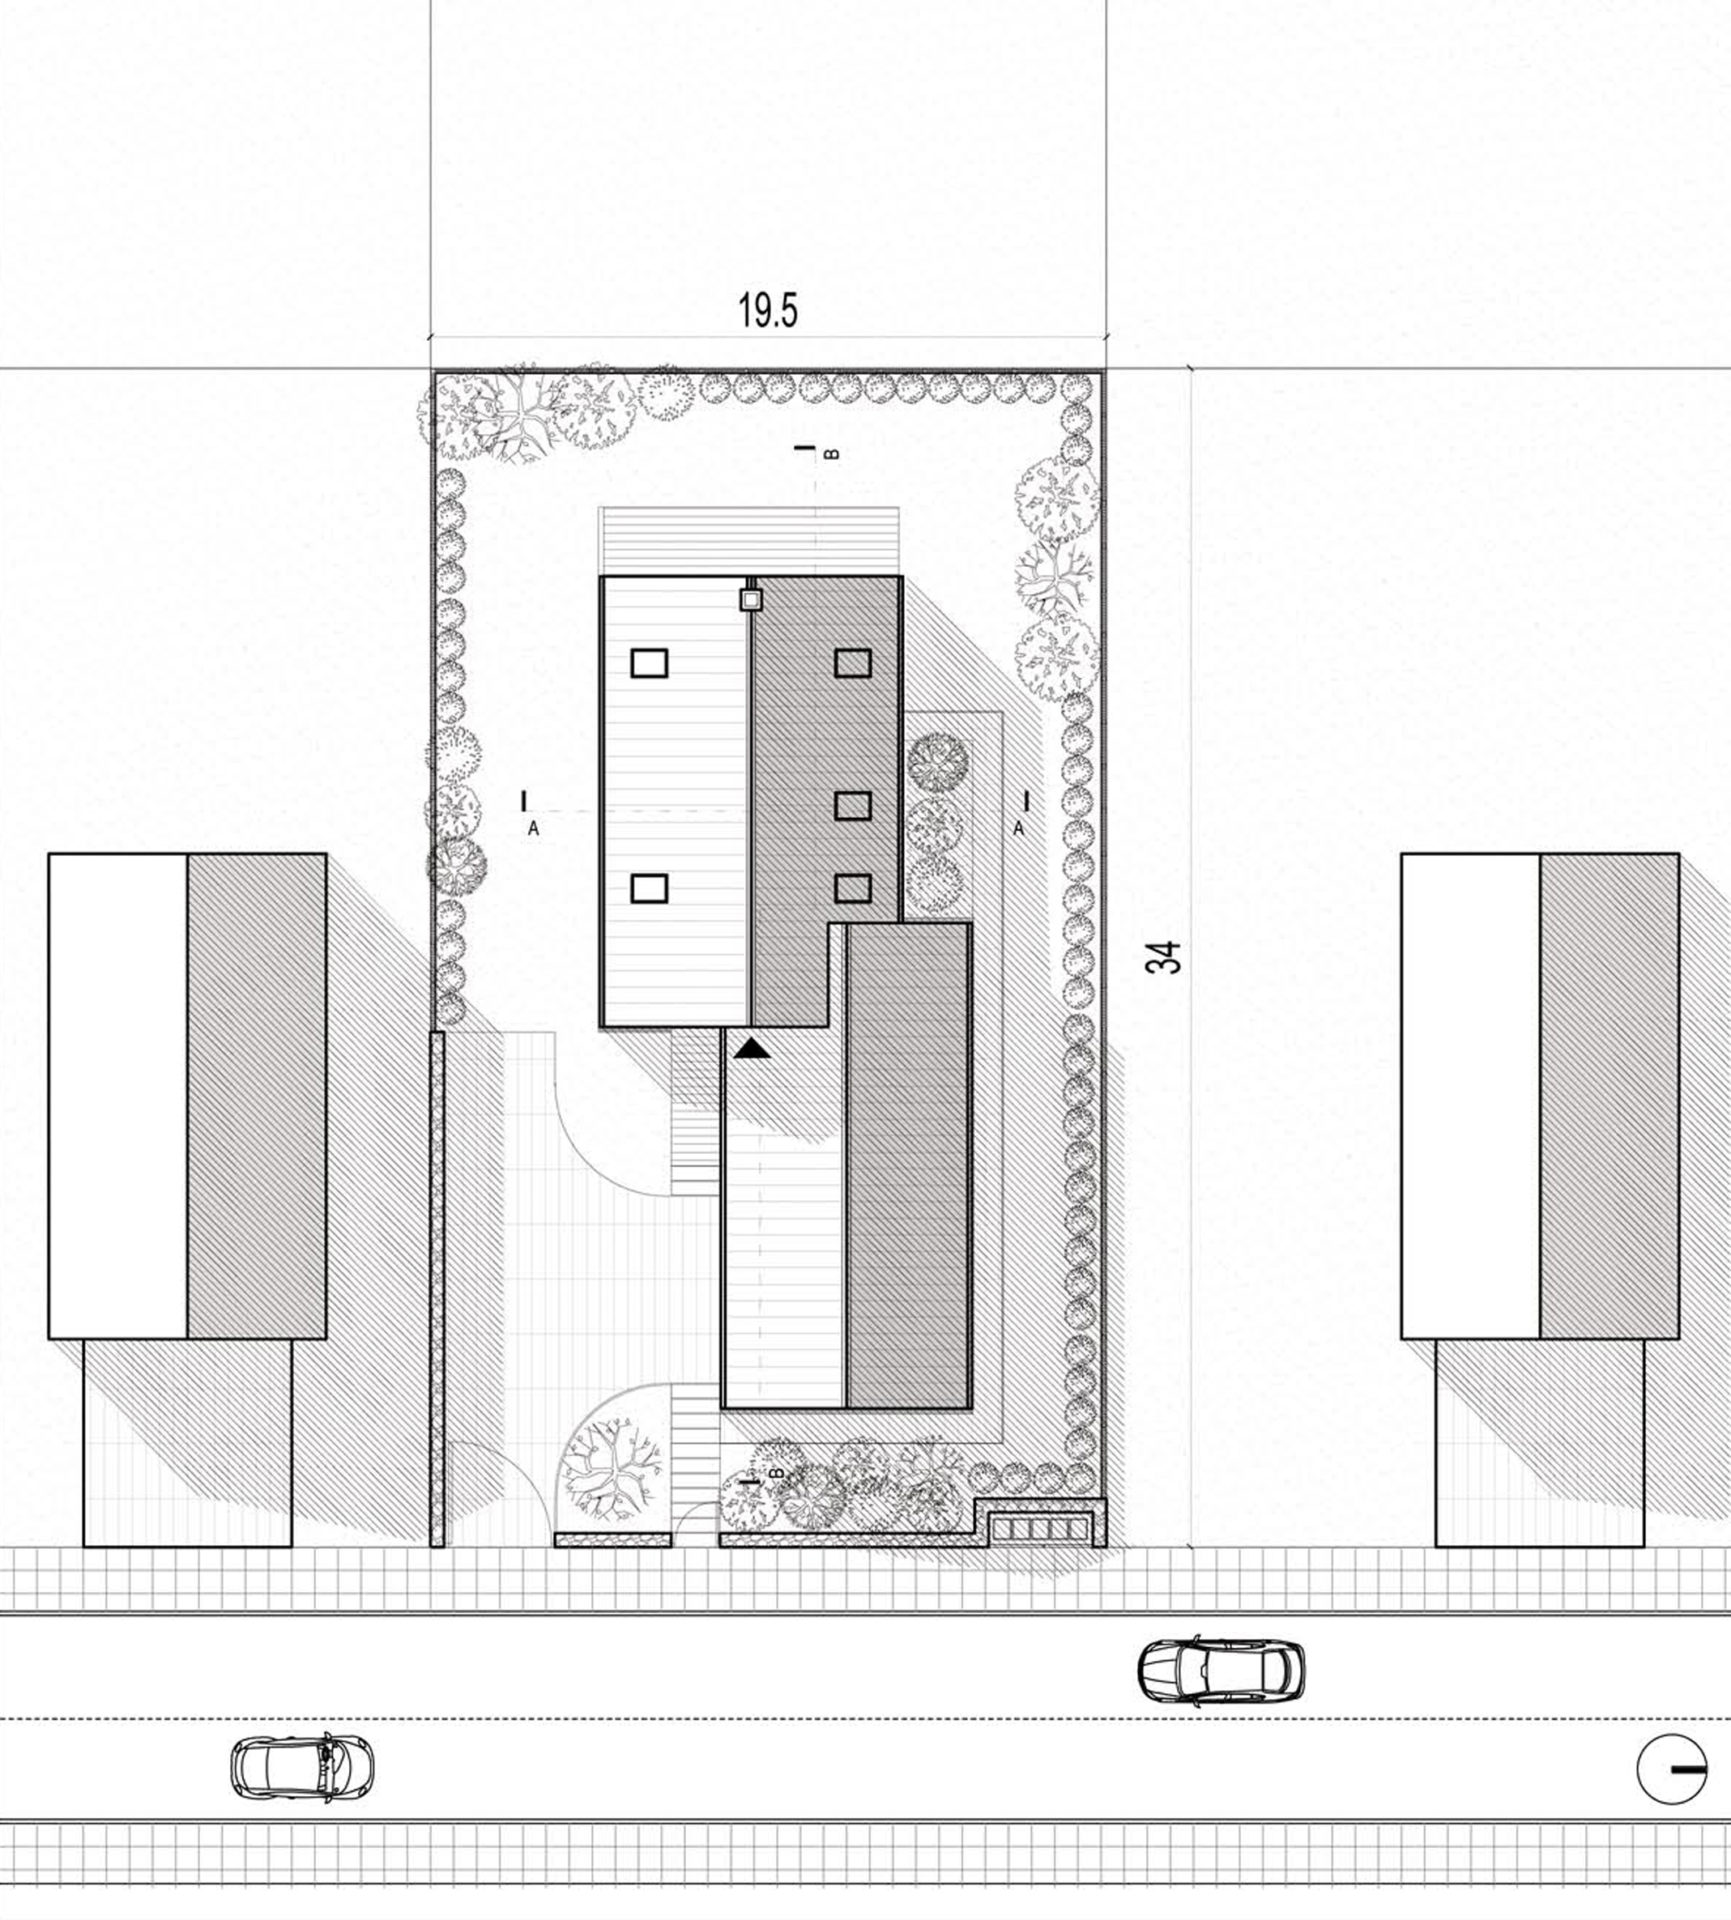 Plan sytuacyjny lokalizowania domu jednorodzinnego na modelowej działce.